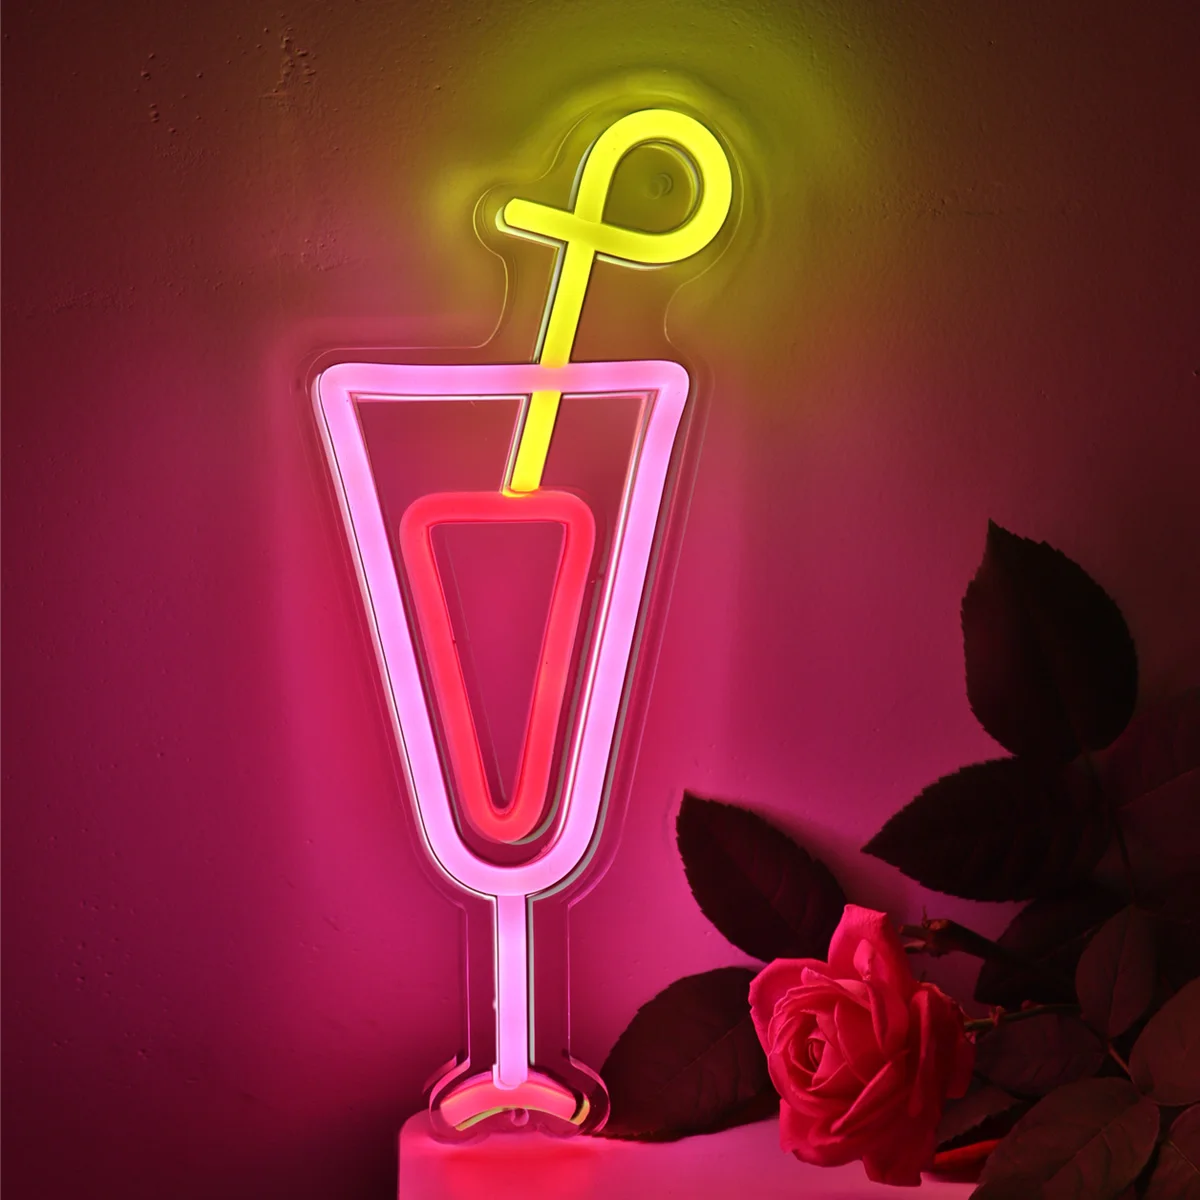 1 шт. коктейльная чашка, светодиодная неоновая вывеска для вечеринки, клуба, паба, бара, галереи, студии, новогодних подарков 4,69 